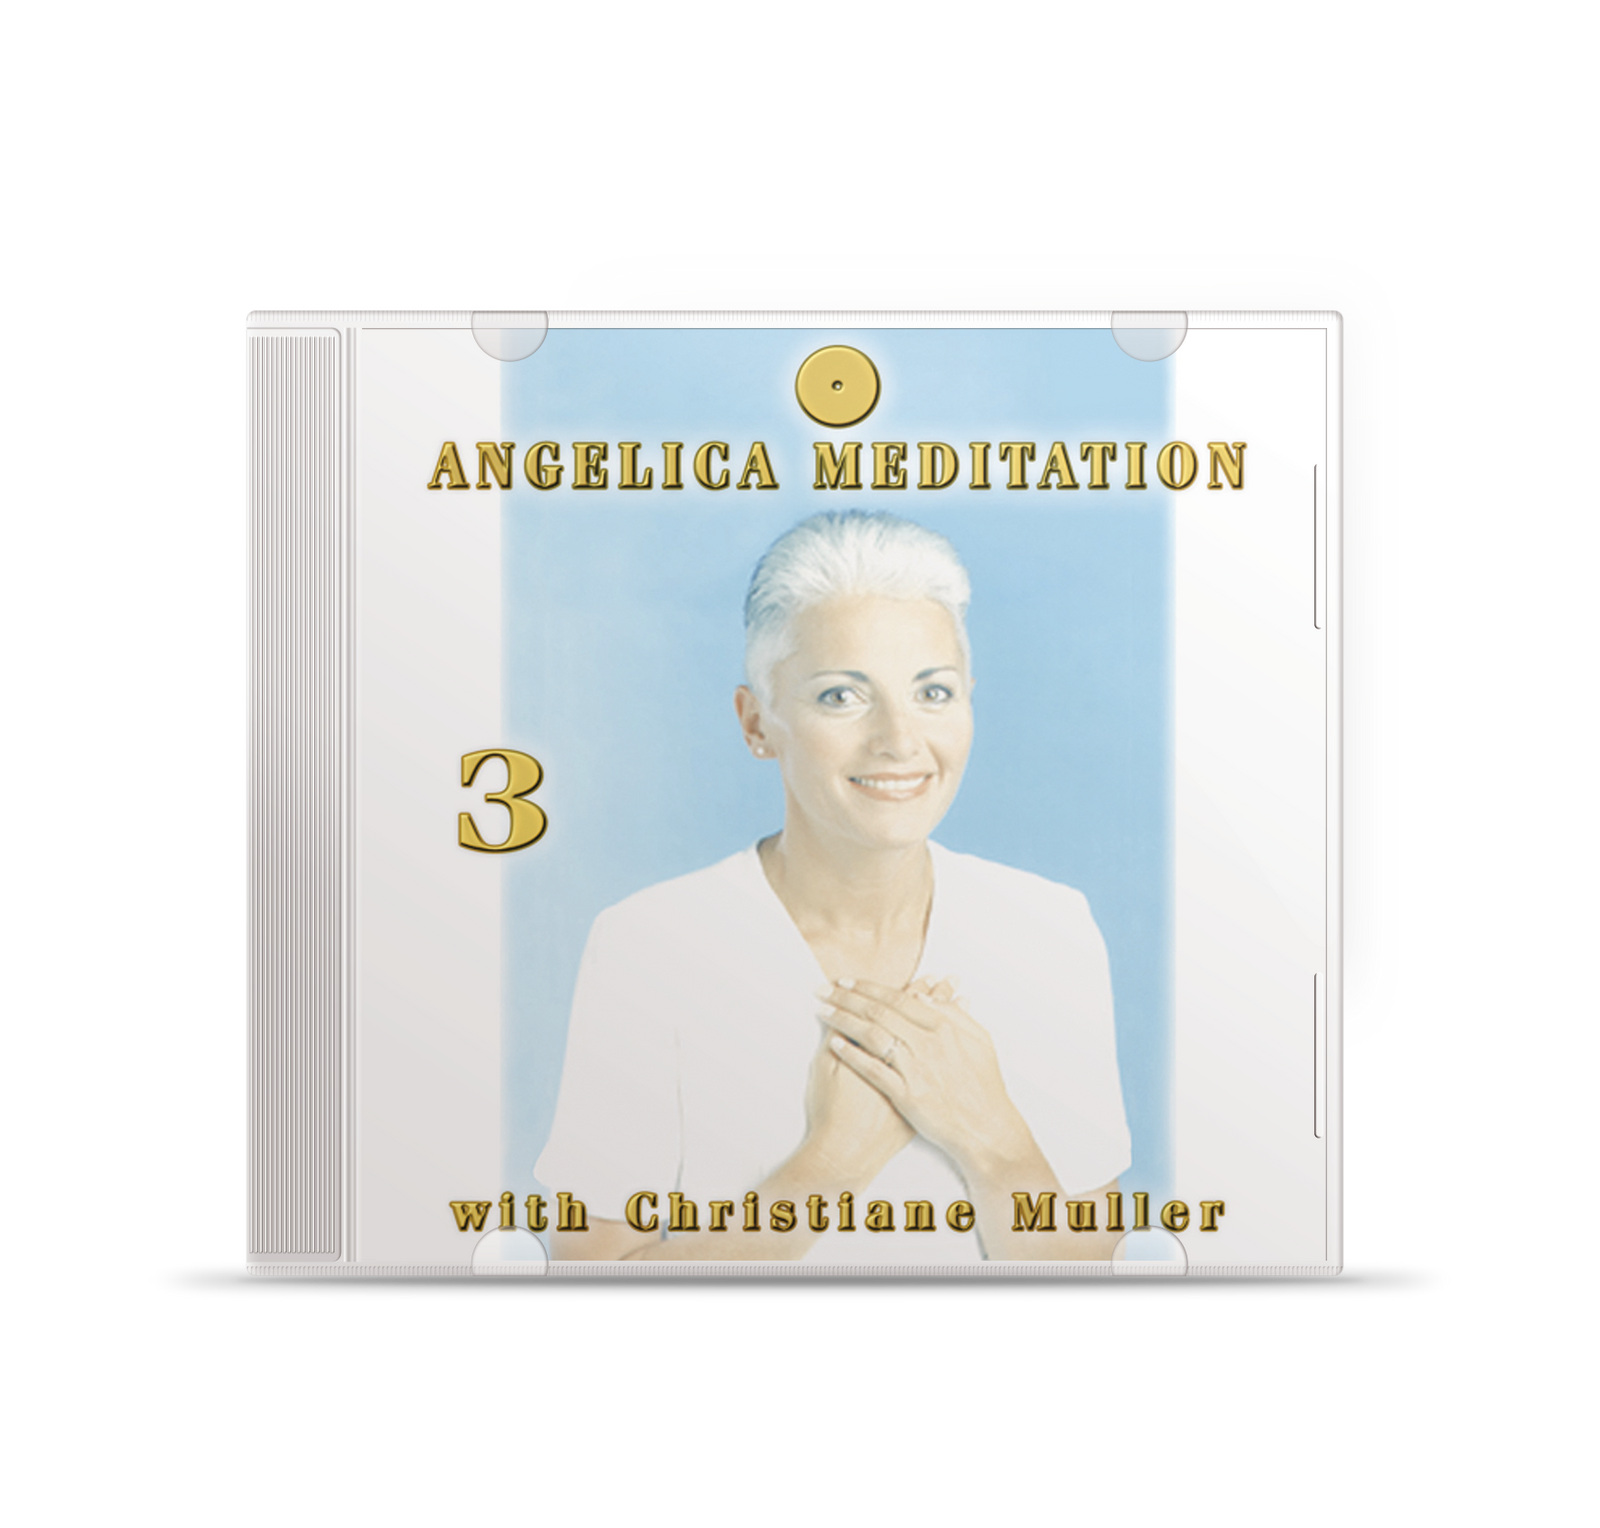 Angelica-Meditation – Band 4 (Engel 49 bis 54)